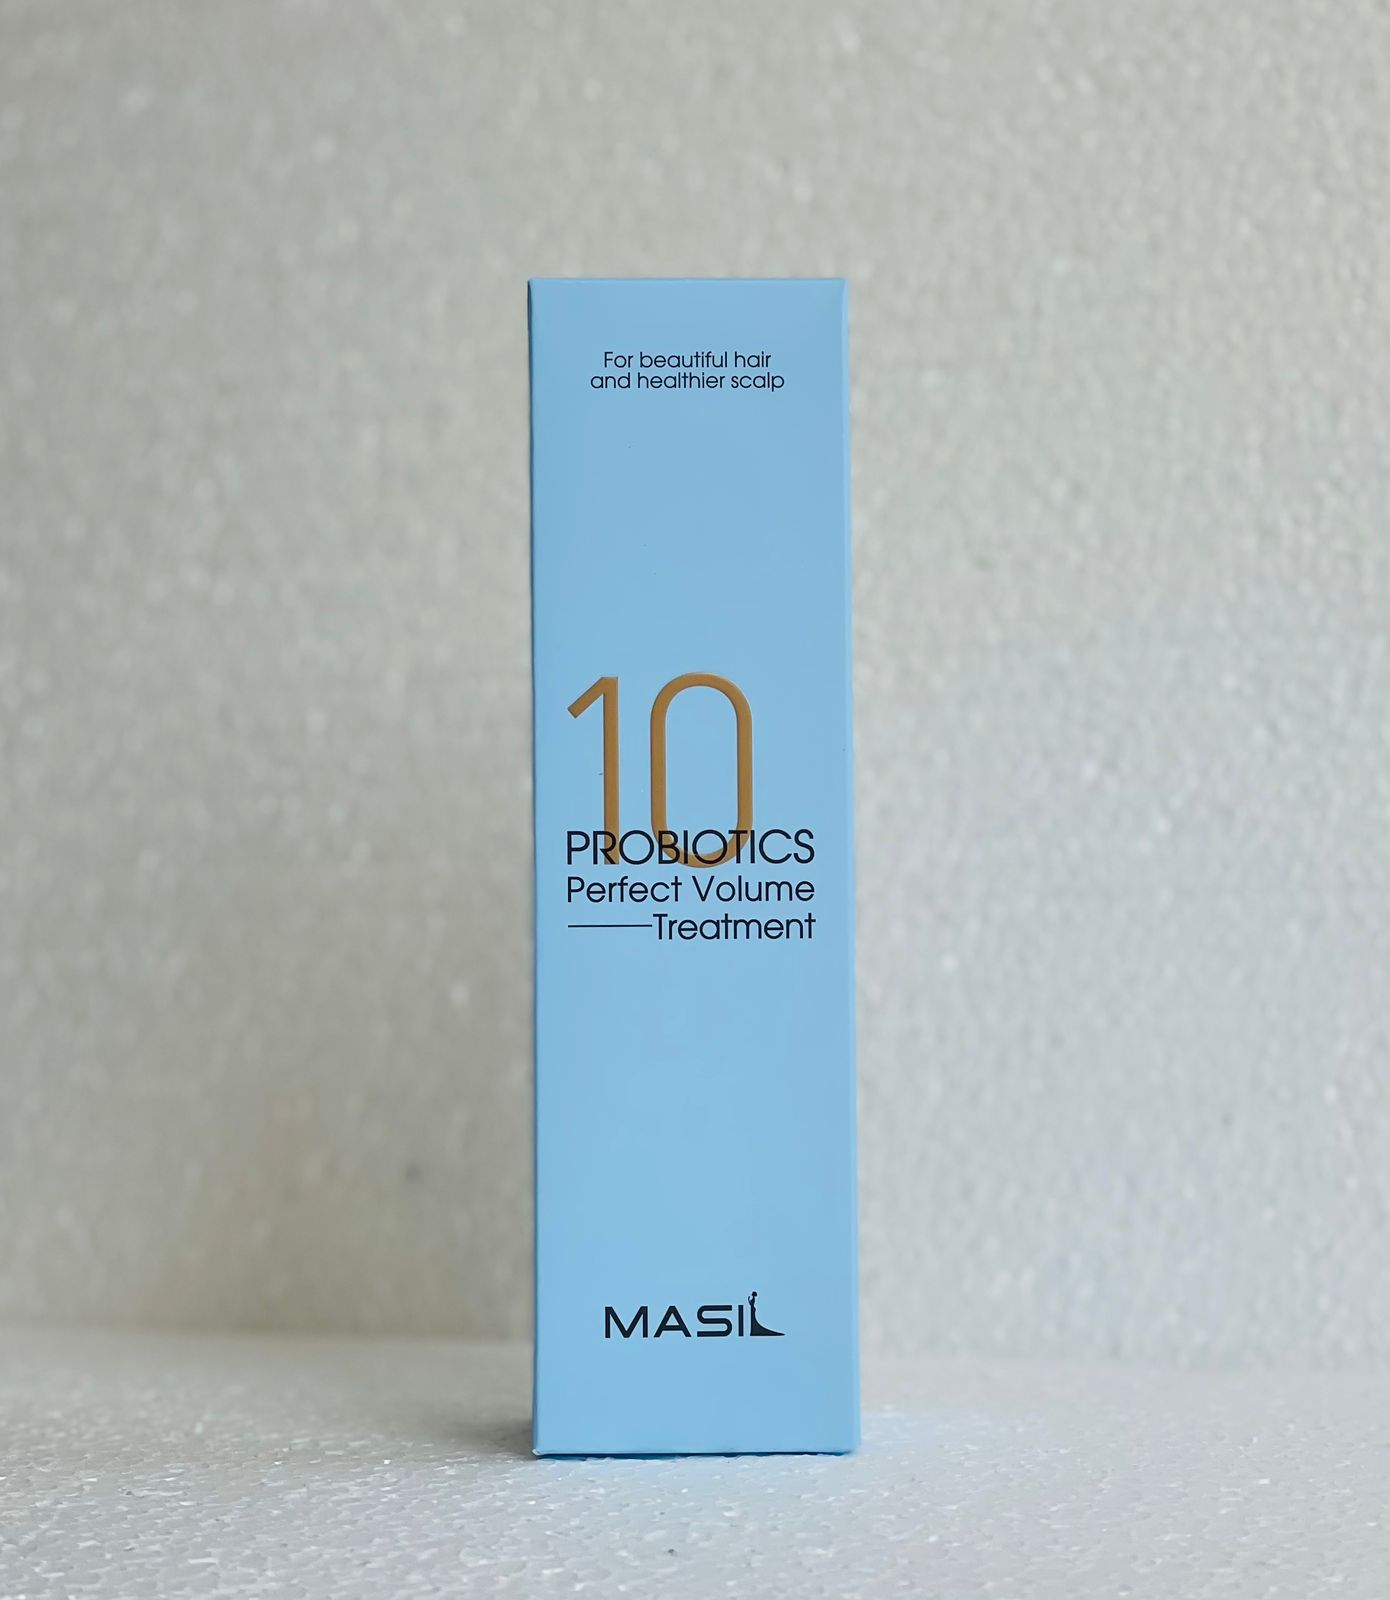 Маска Masil для объема волос с пробиотиками Probiotics Perfect Volume Treatment 300 мл маска для волос masil от перхоти с яблочным уксусом 300 мл probiotics apple vinegar treatm